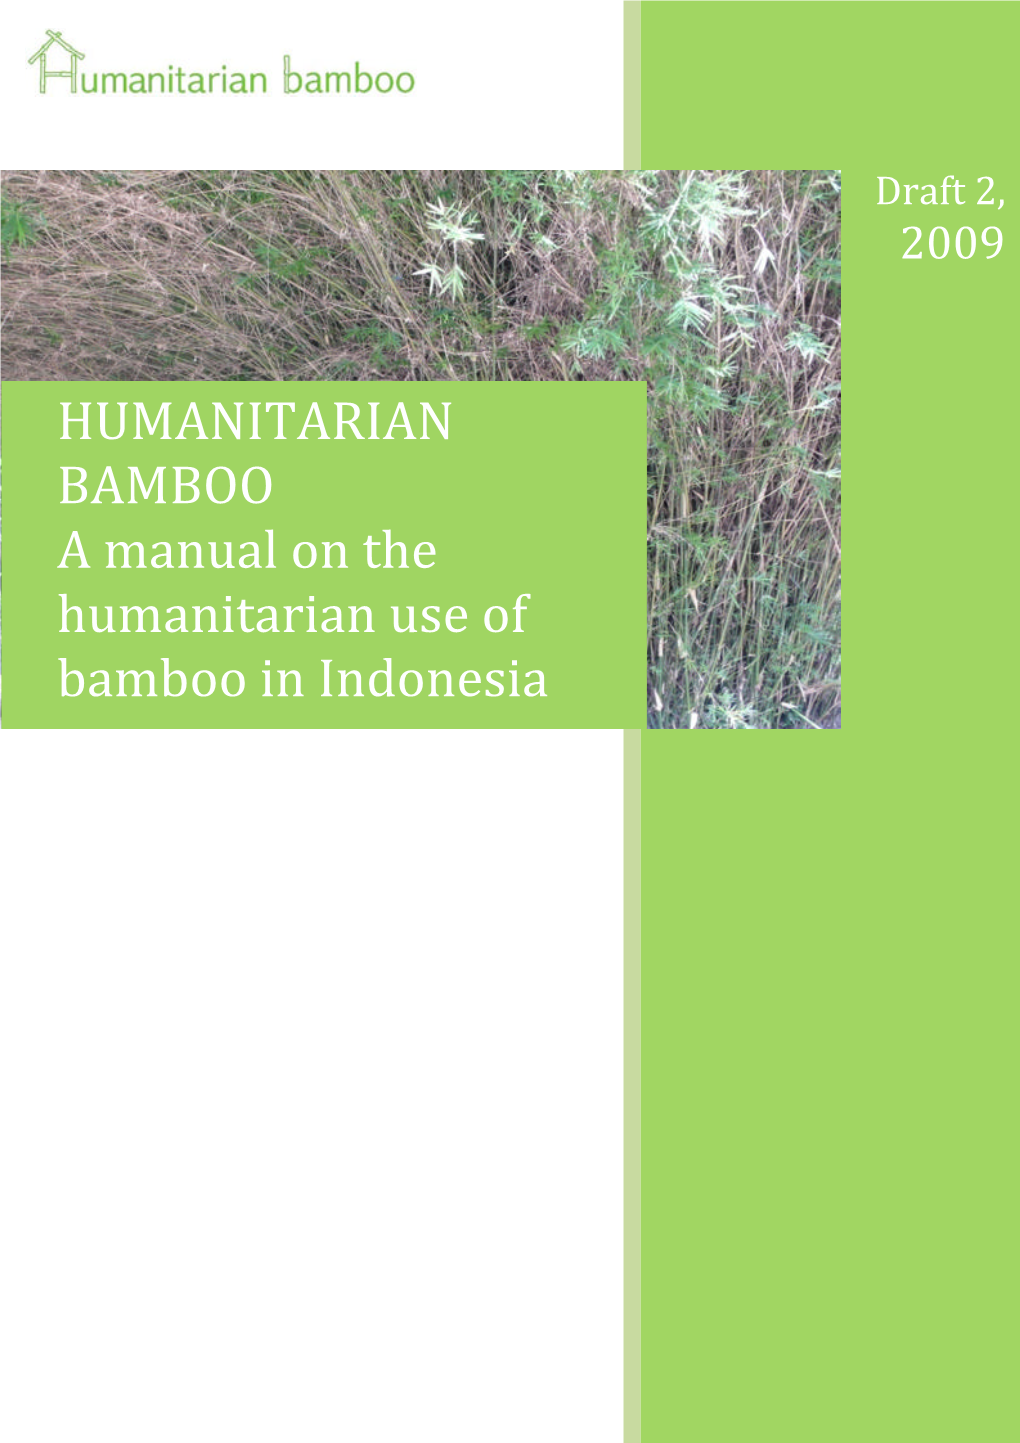 HUMANITARIAN BAMBOO a Manual on the Humanitarian Use of Bamboo